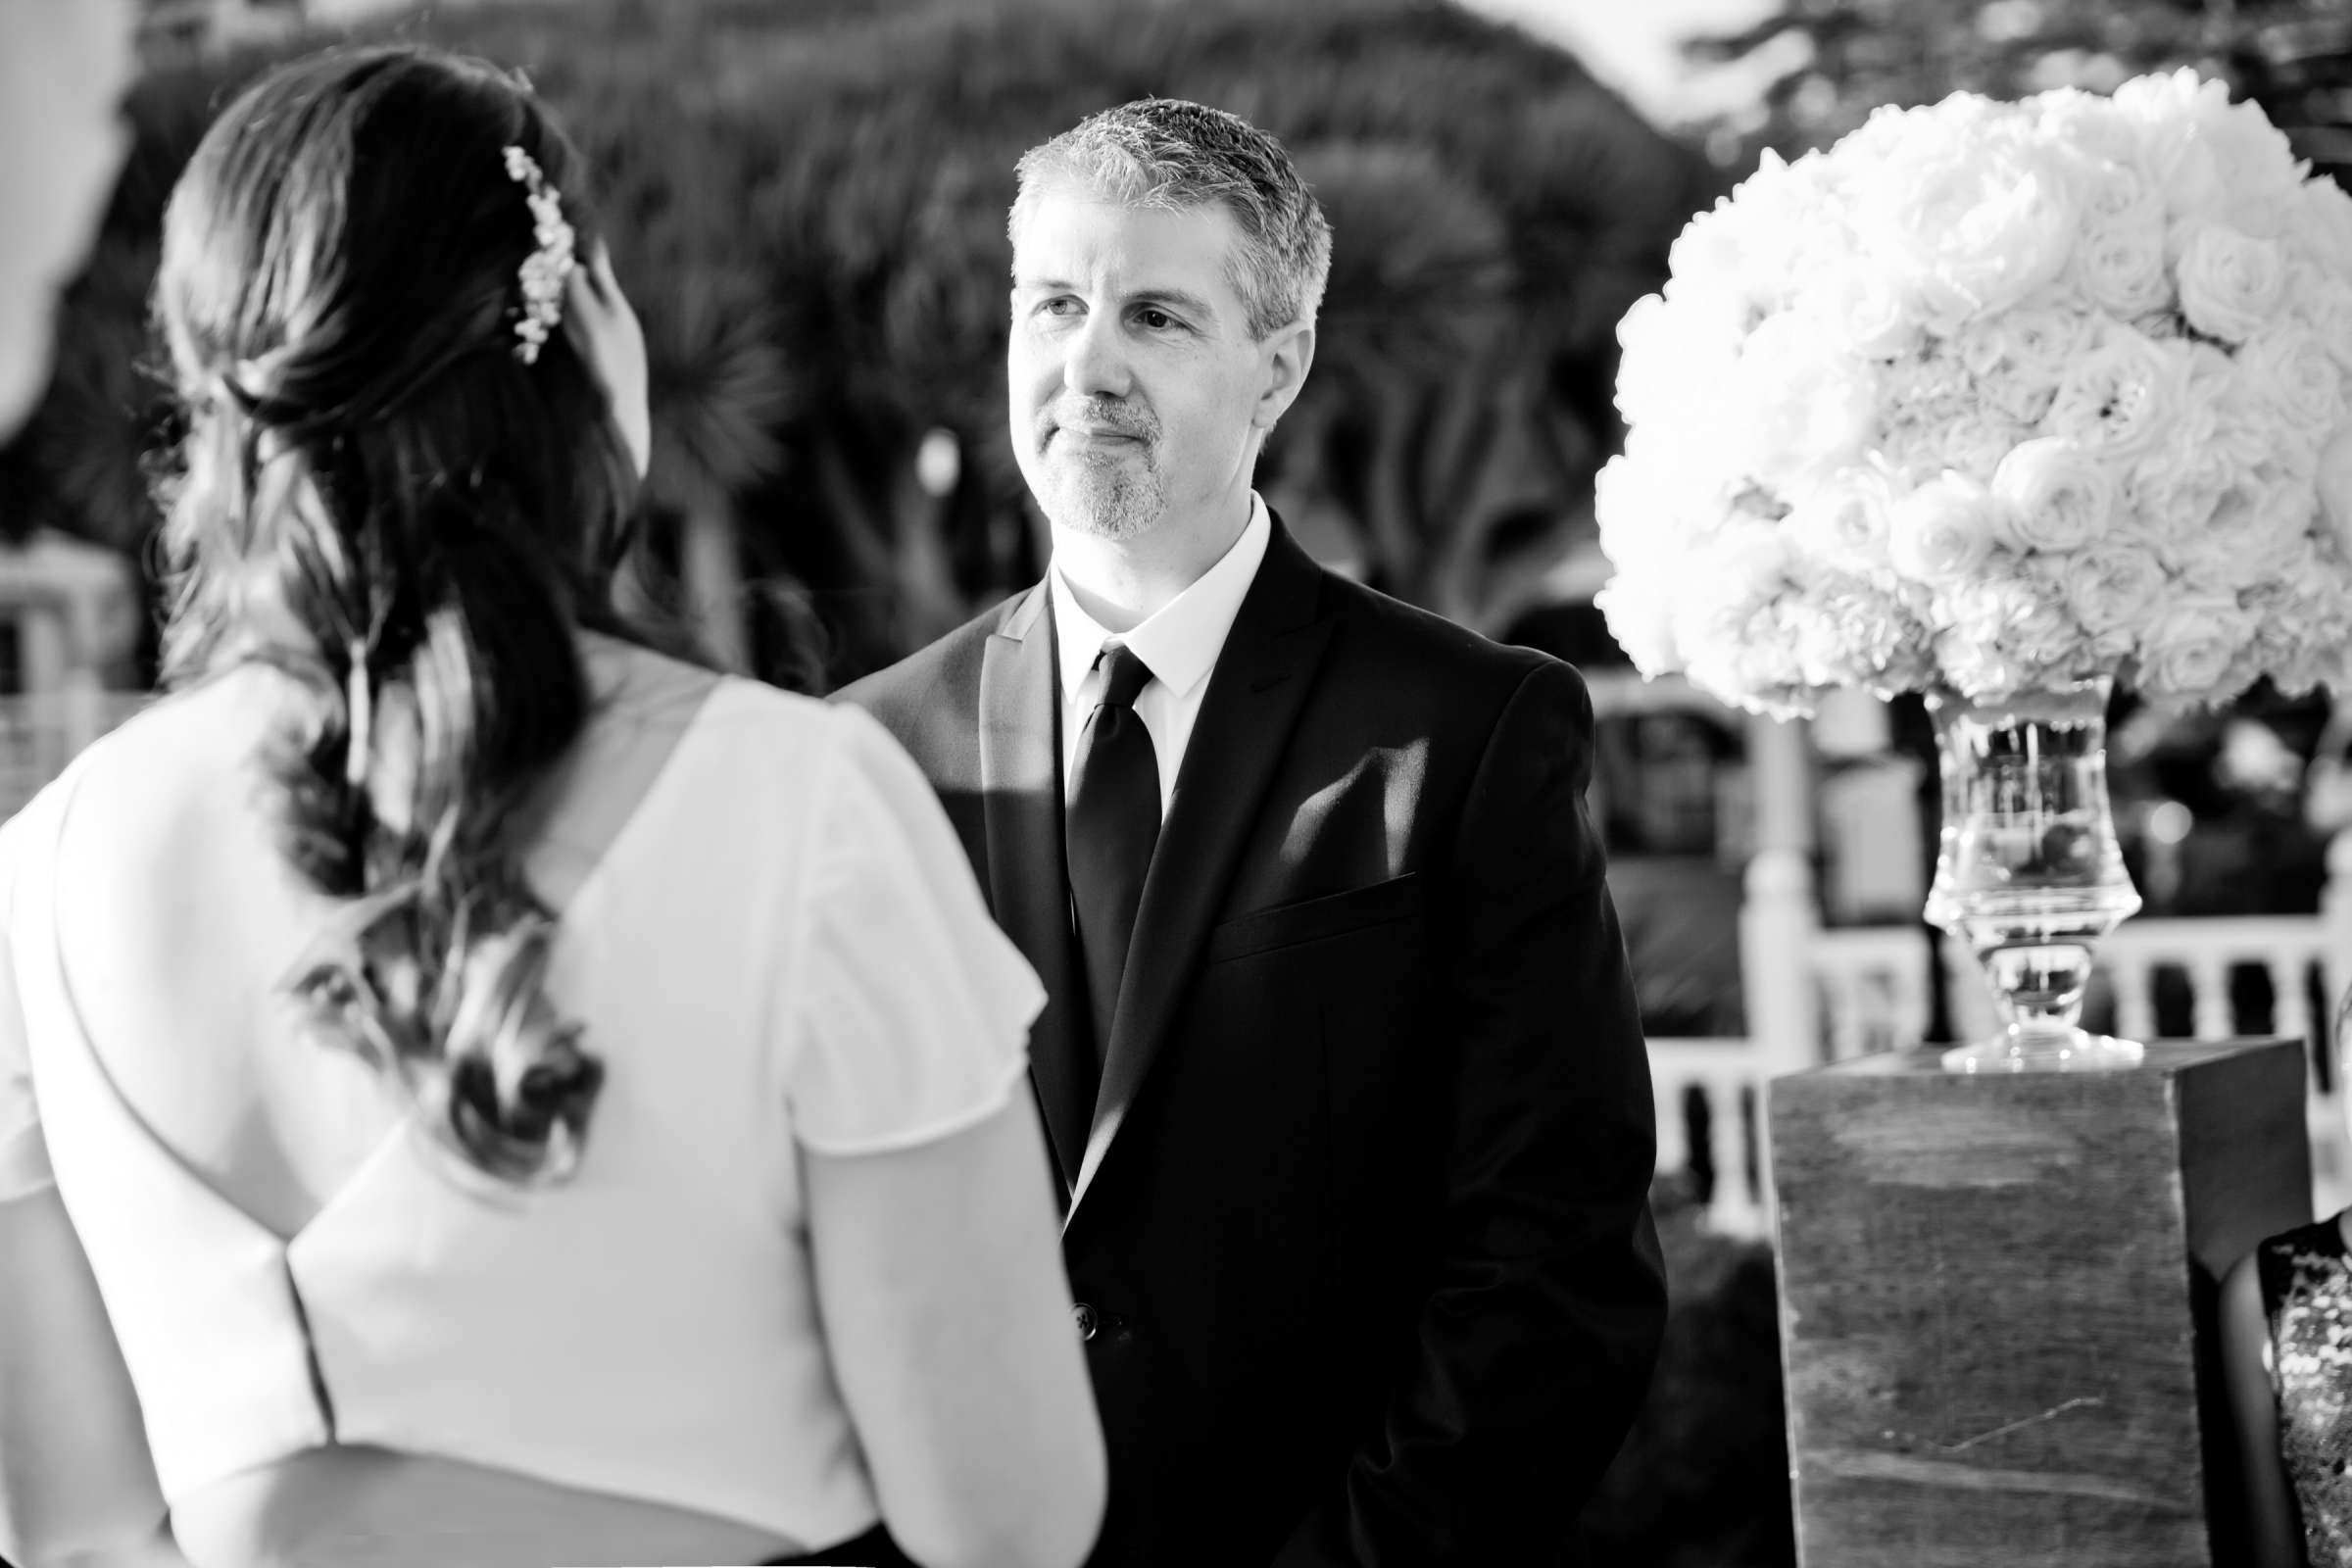 Hotel Del Coronado Wedding, Melis and Marc Wedding Photo #32 by True Photography